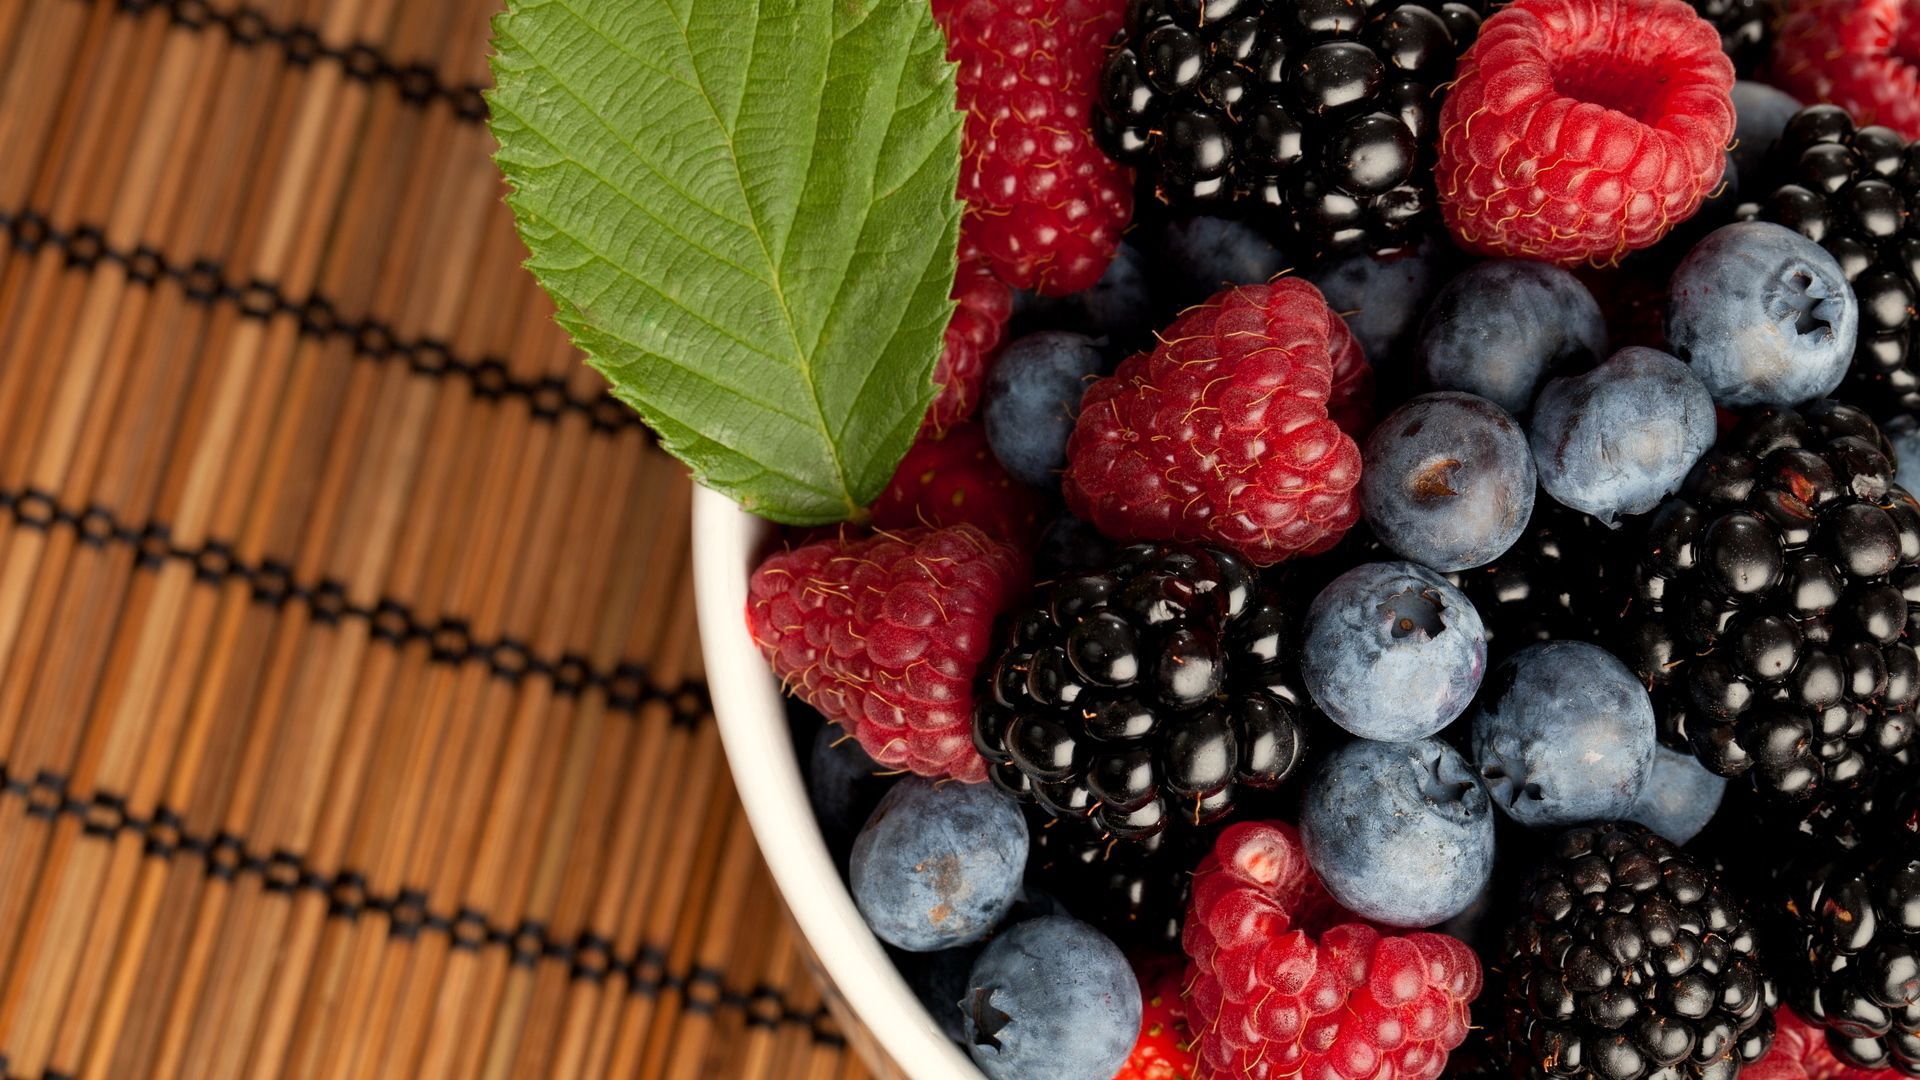 Phone Wallpaper (No watermarks) bilberries, raspberry, food, berries